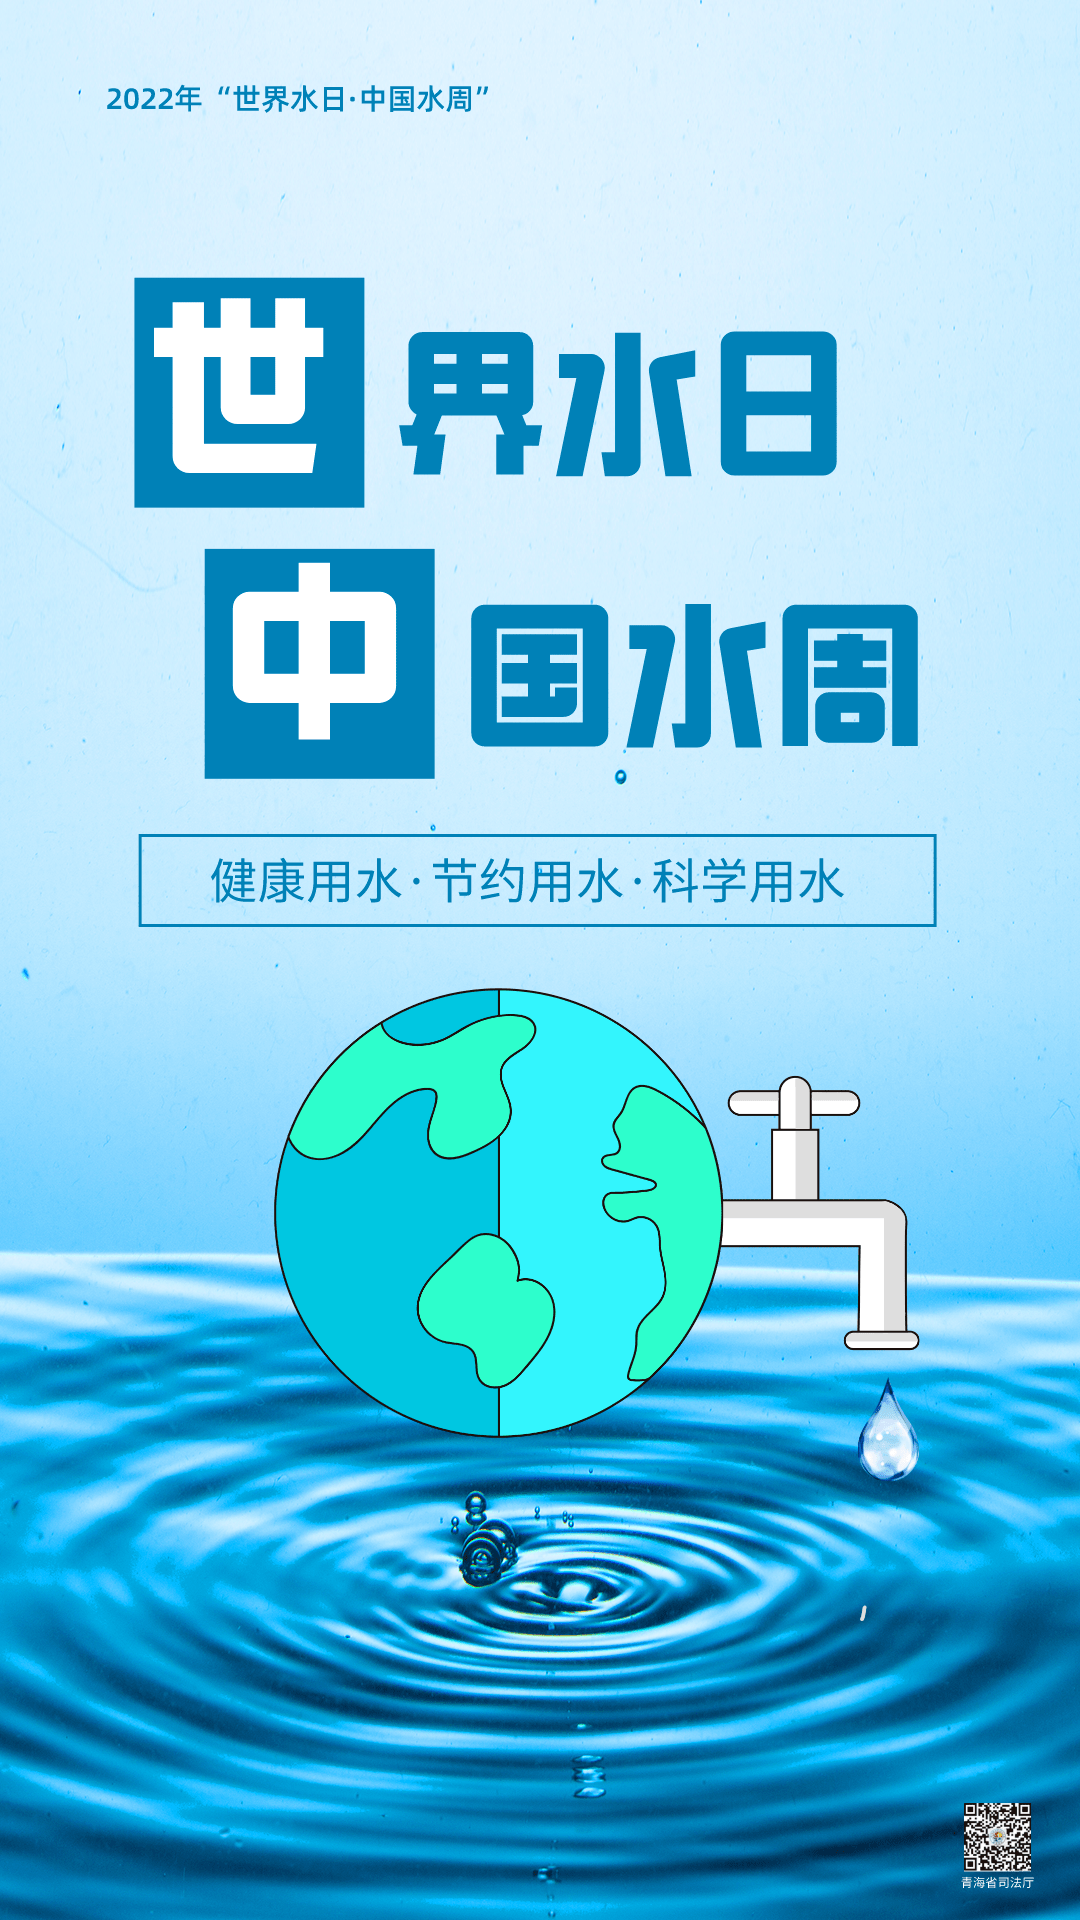 推进地下水超采综合治理中国水周活动主题为我国纪念2022年世界